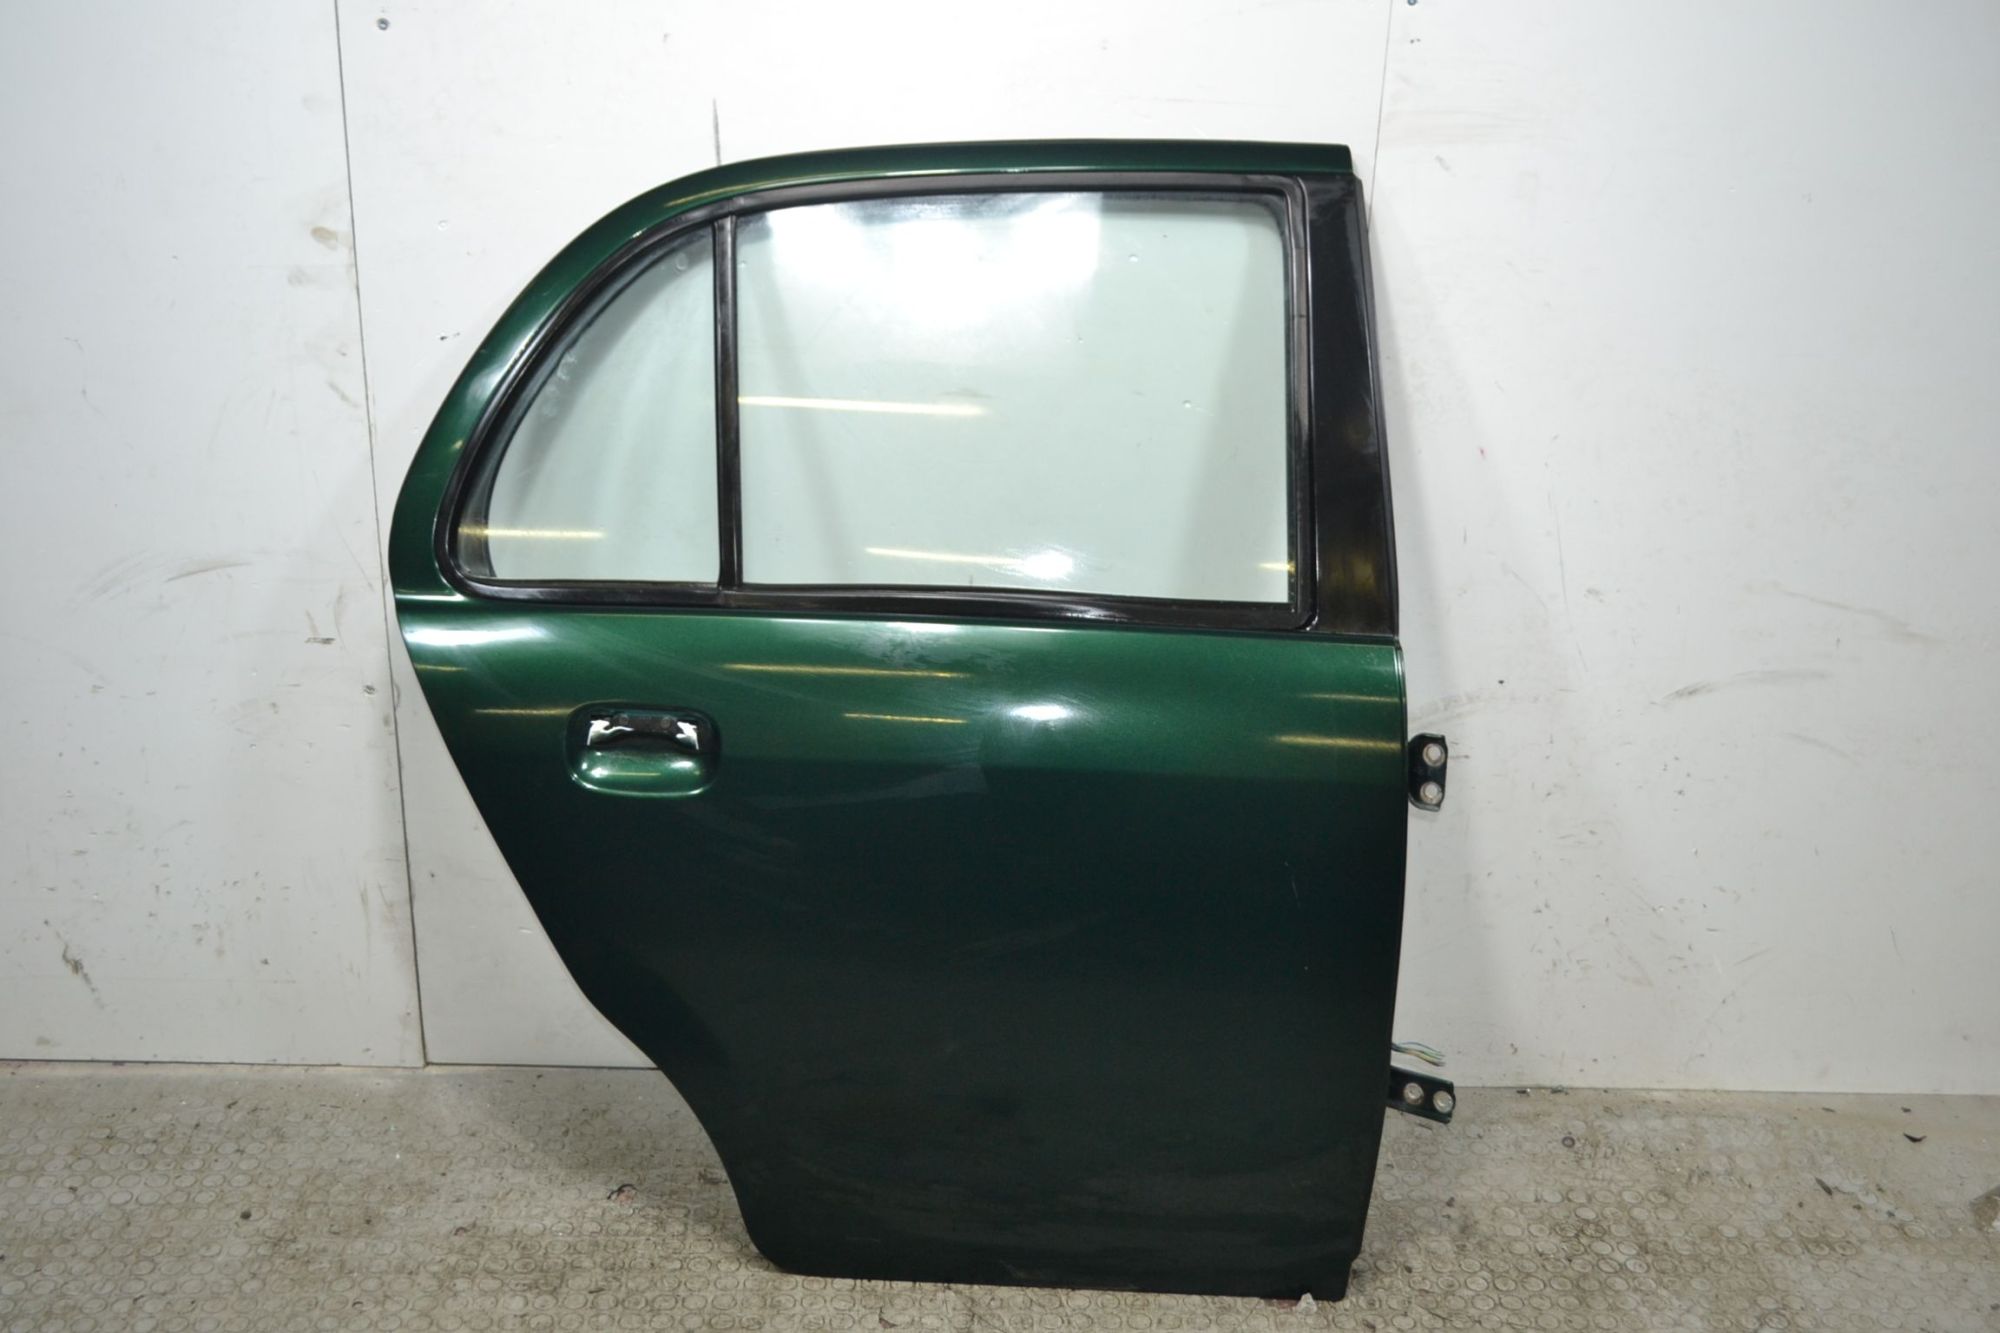 Portiera sportello posteriore DX Daihatsu Trevis Dal 2004 al 2010 Colore verde  1706523858829